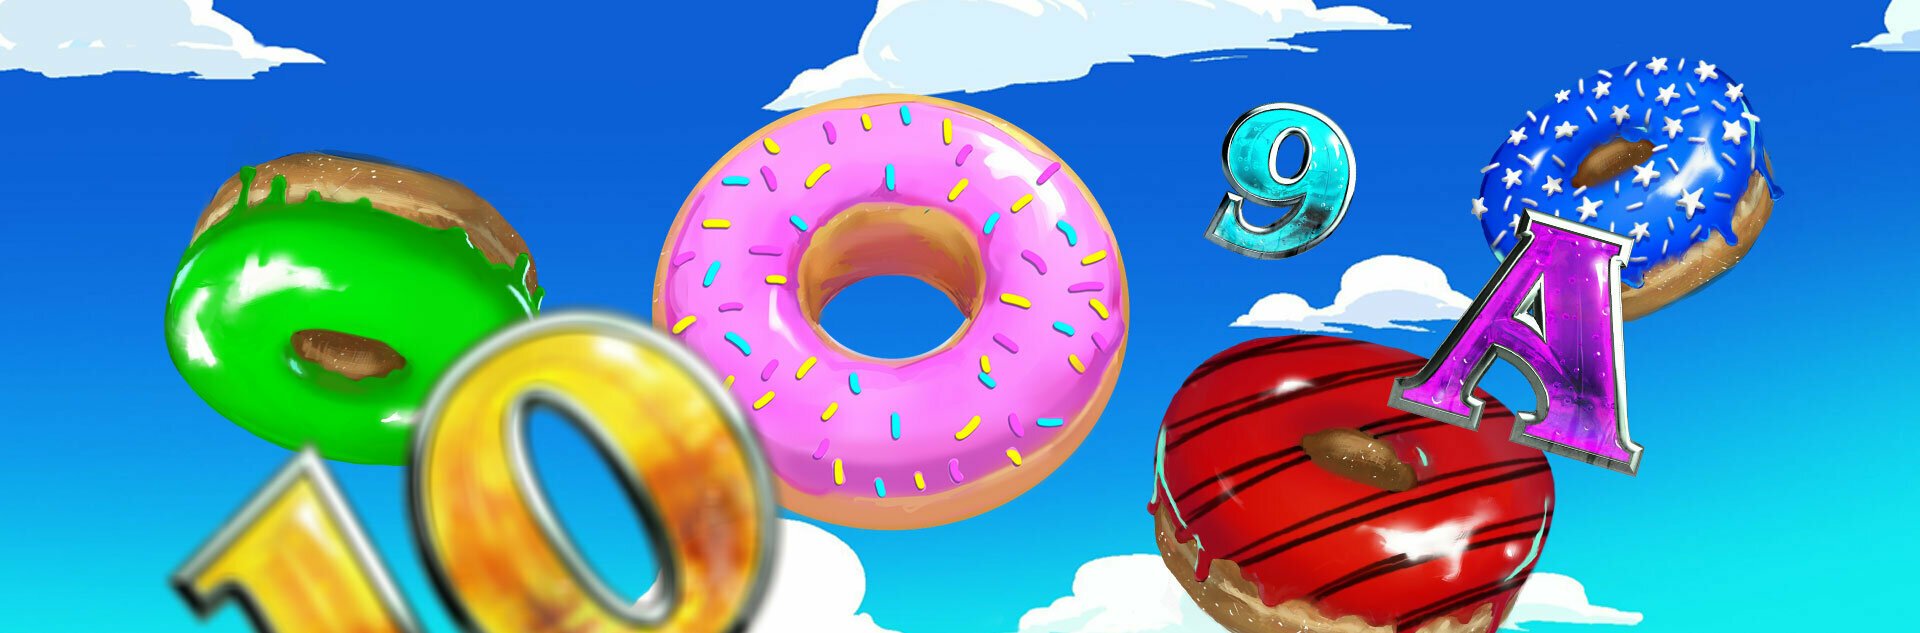 Play Donuts Free Slot